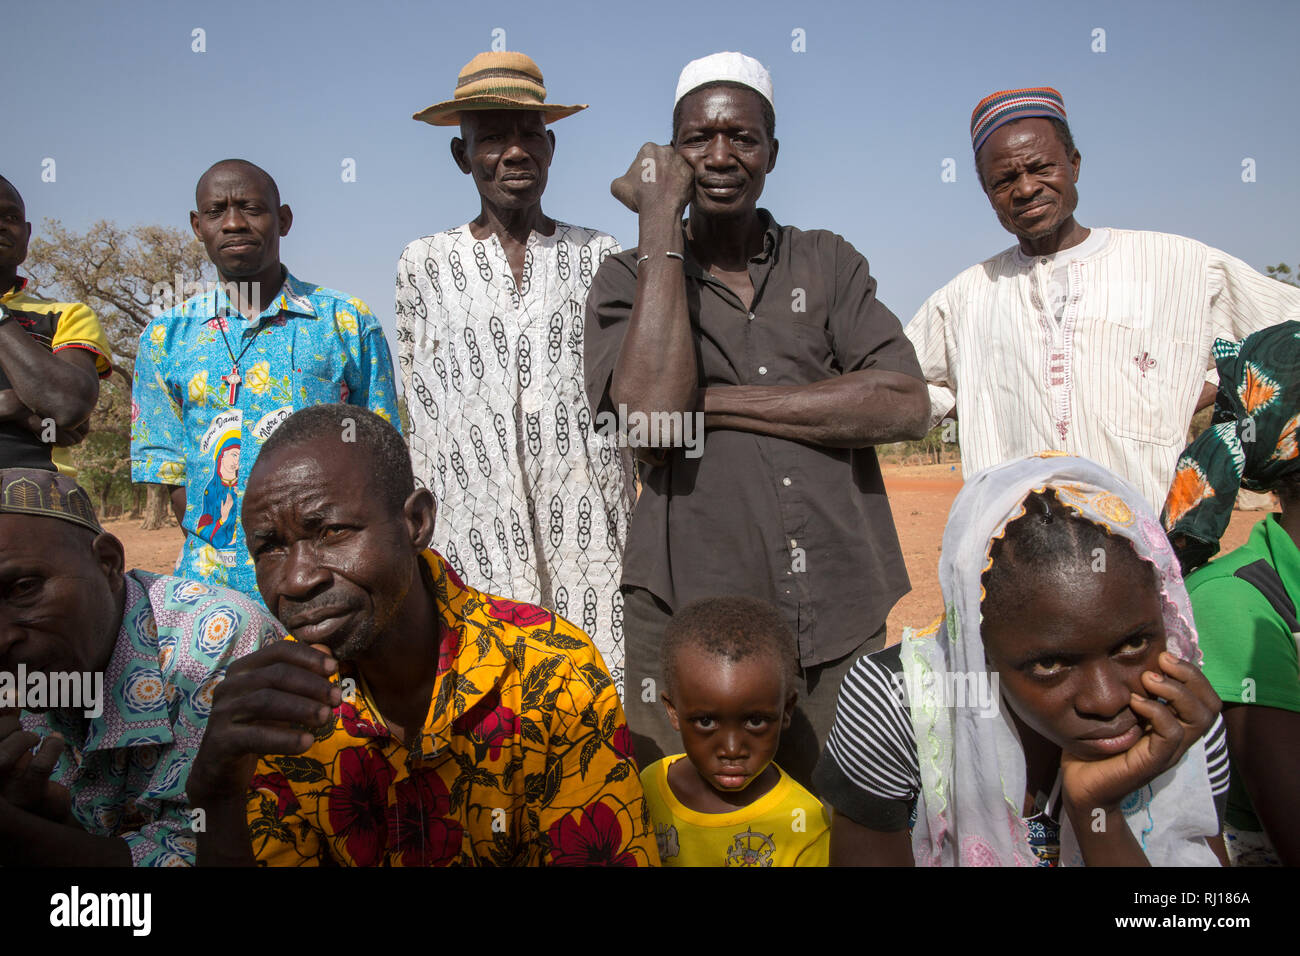 Il villaggio di Samba, Provincia Yako, Burkina Faso. Gli abitanti di un  villaggio di guardare una dimostrazione di preparazione di porridge e  campagne di sensibilizzazione per le mamme sul bambino nutrizione problemi